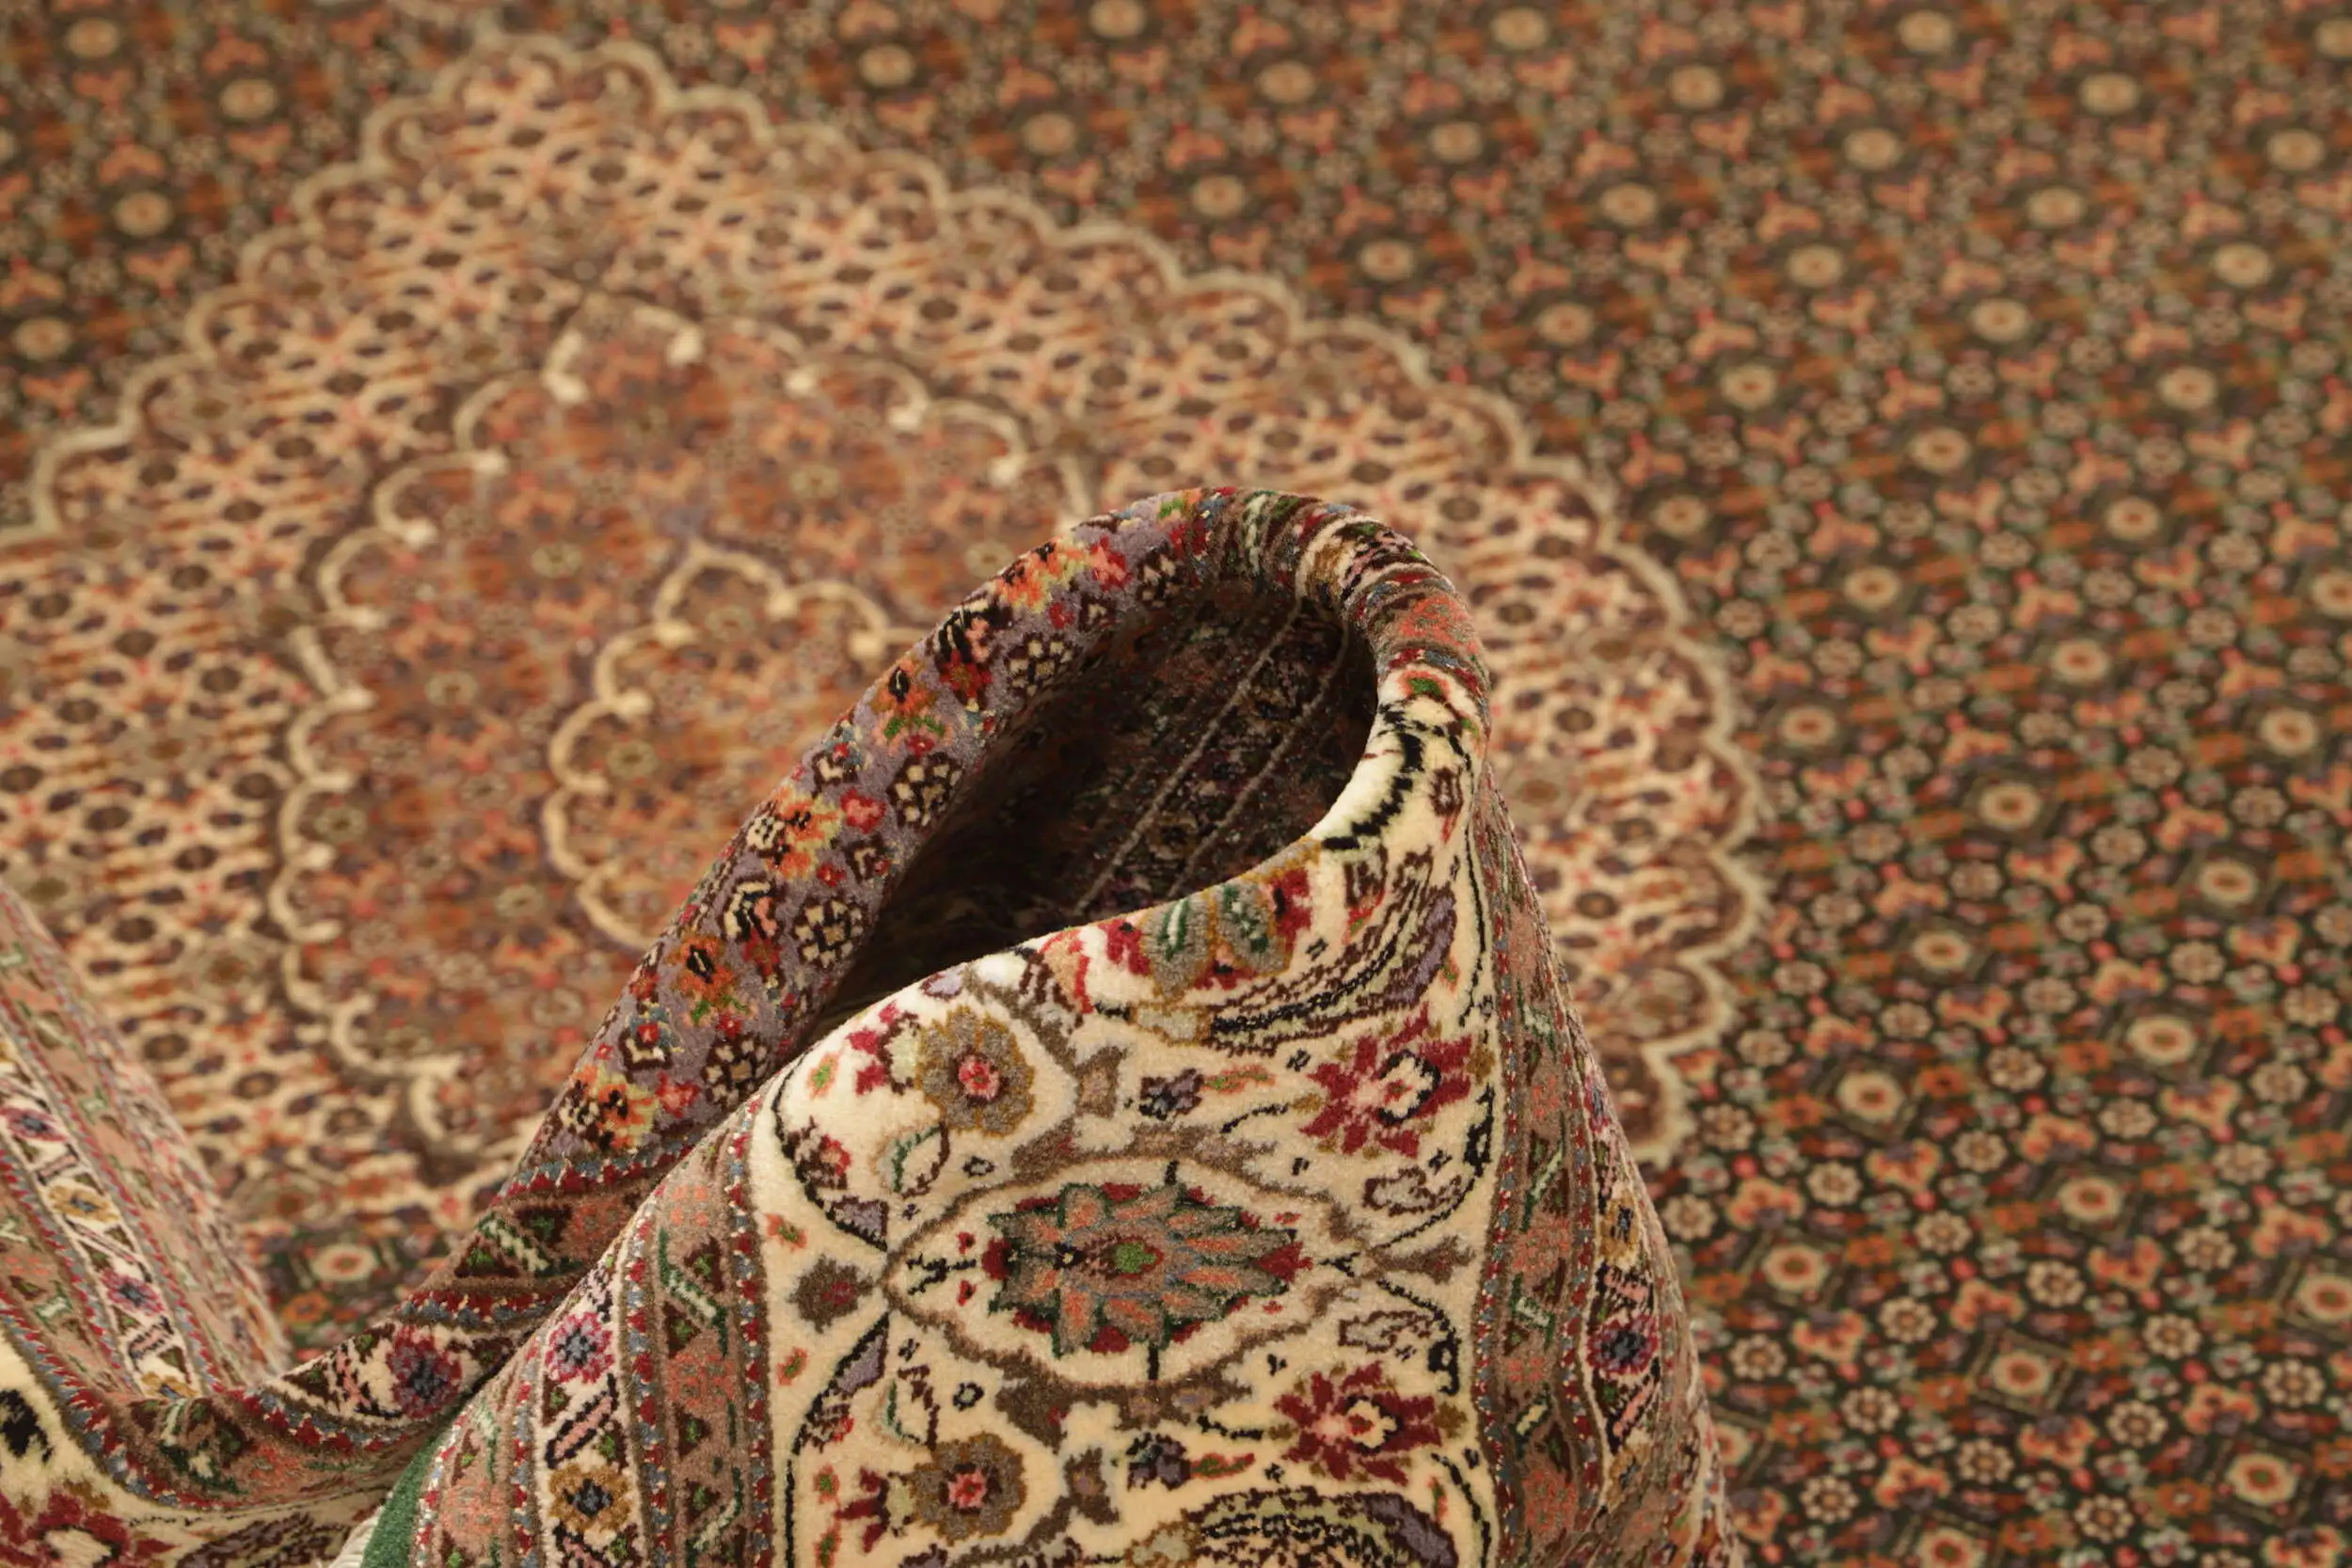 Teppich Persien 201x399cm Täbriz 50 Persischer Teppich Orient fein